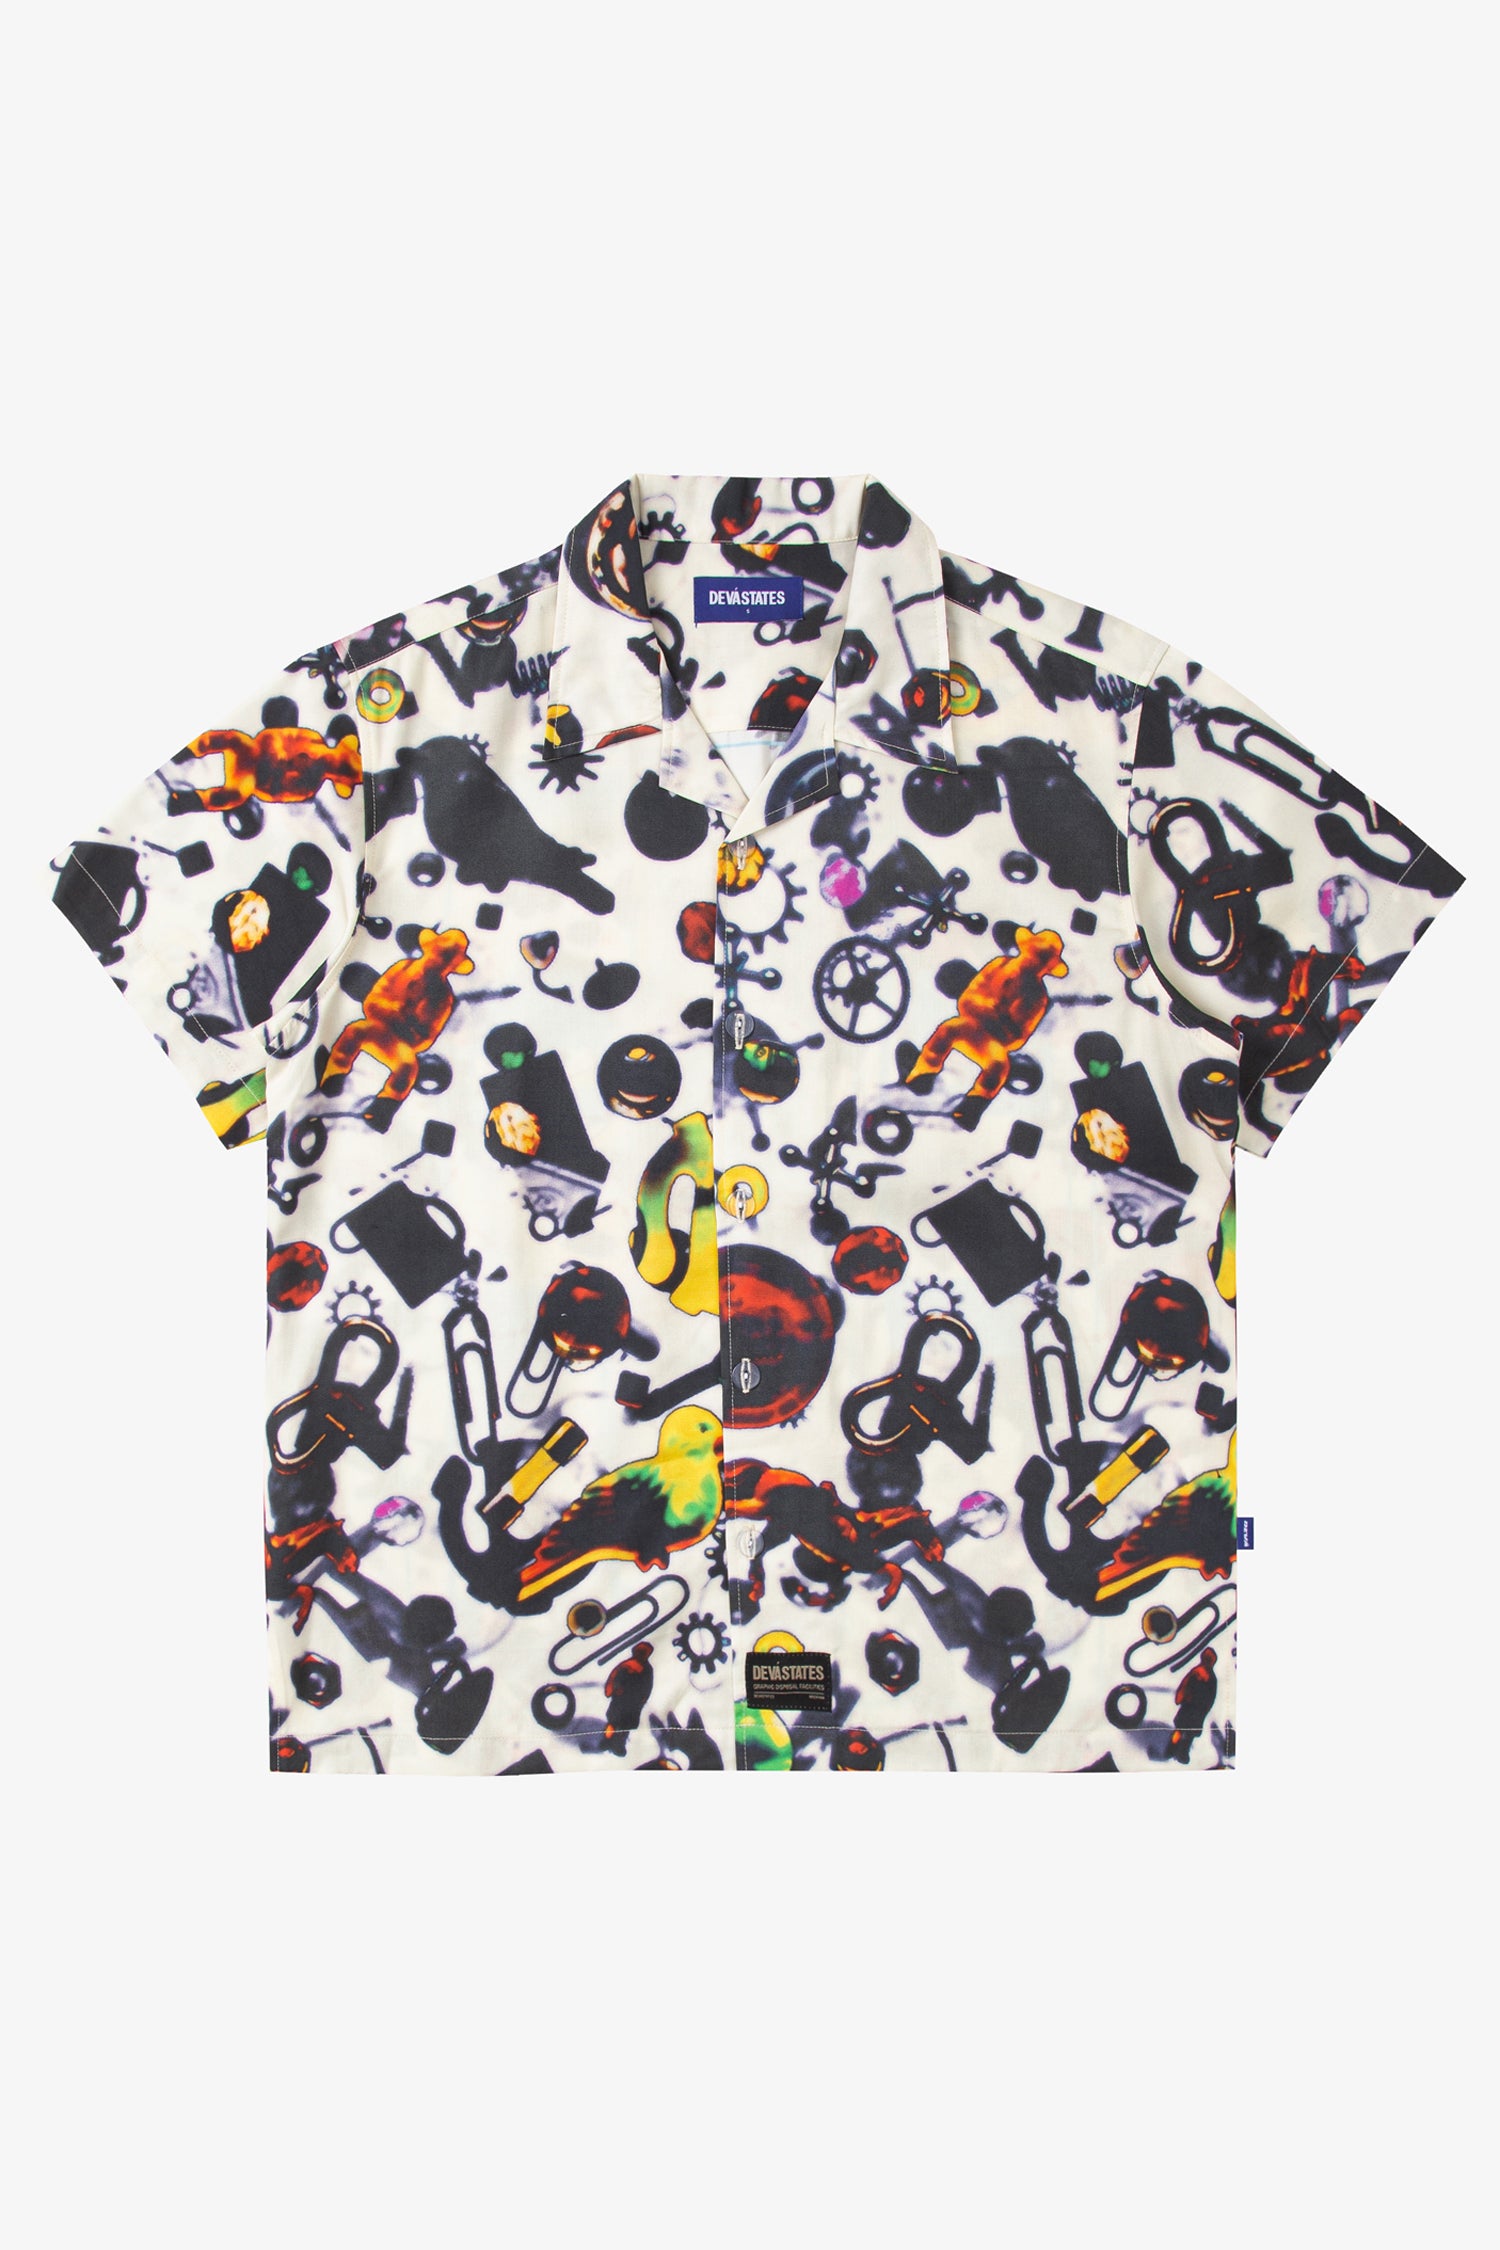 Selectshop FRAME - DEVA STATES Souvneir Shirt Shirts Dubai